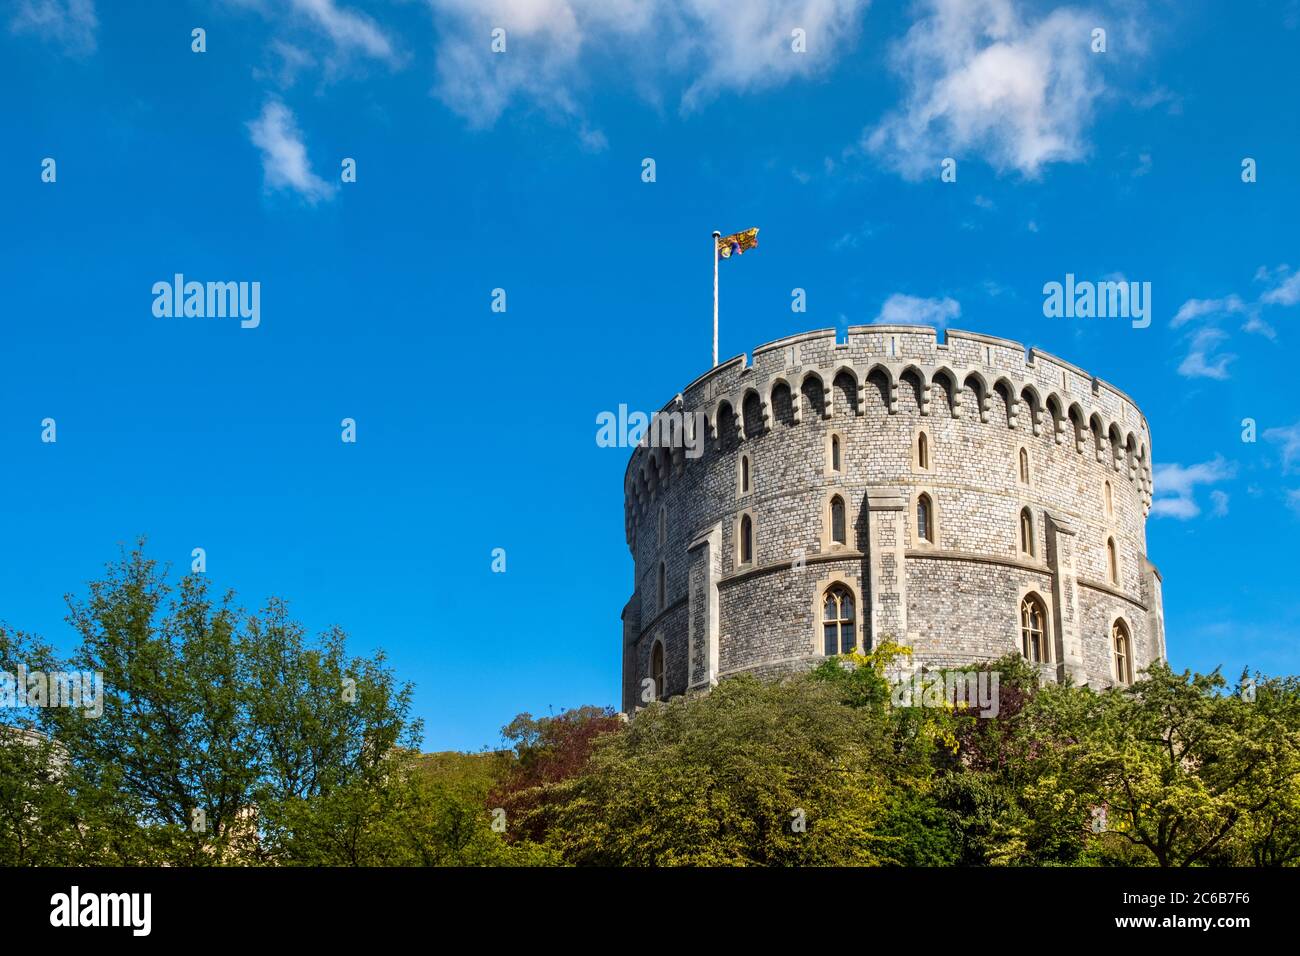 Der runde Normannische Bergfried (Round Tower) in Windsor Castle mit der Queen's Flag (Royal Standard) fliegend, Windsor, Berkshire, England, Vereinigtes Königreich, Euro Stockfoto